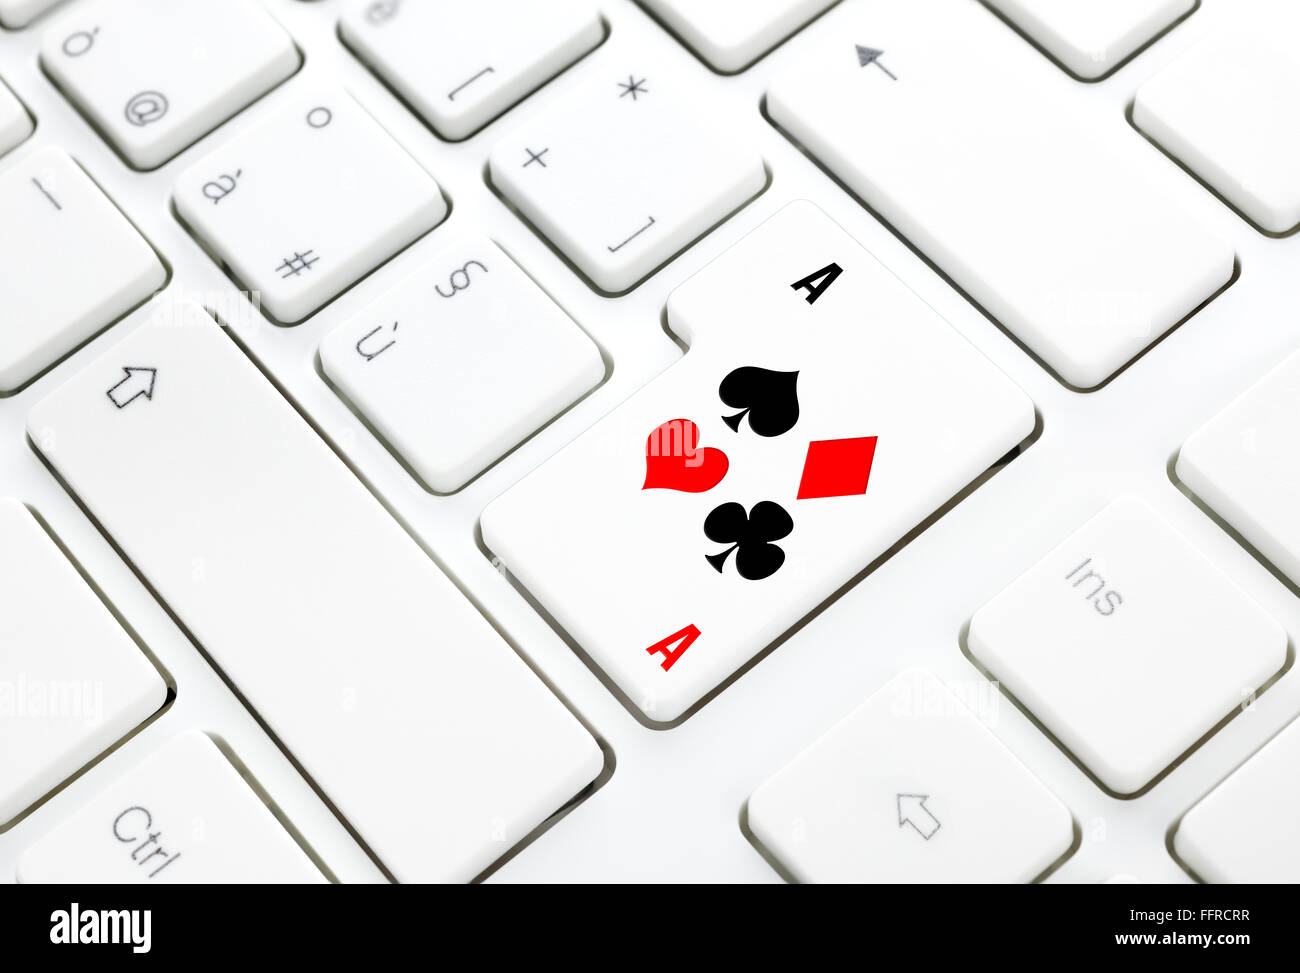 Poker o casinò online il concetto di gioco. Picche cuori diamanti club tasto sulla tastiera bianca Foto Stock